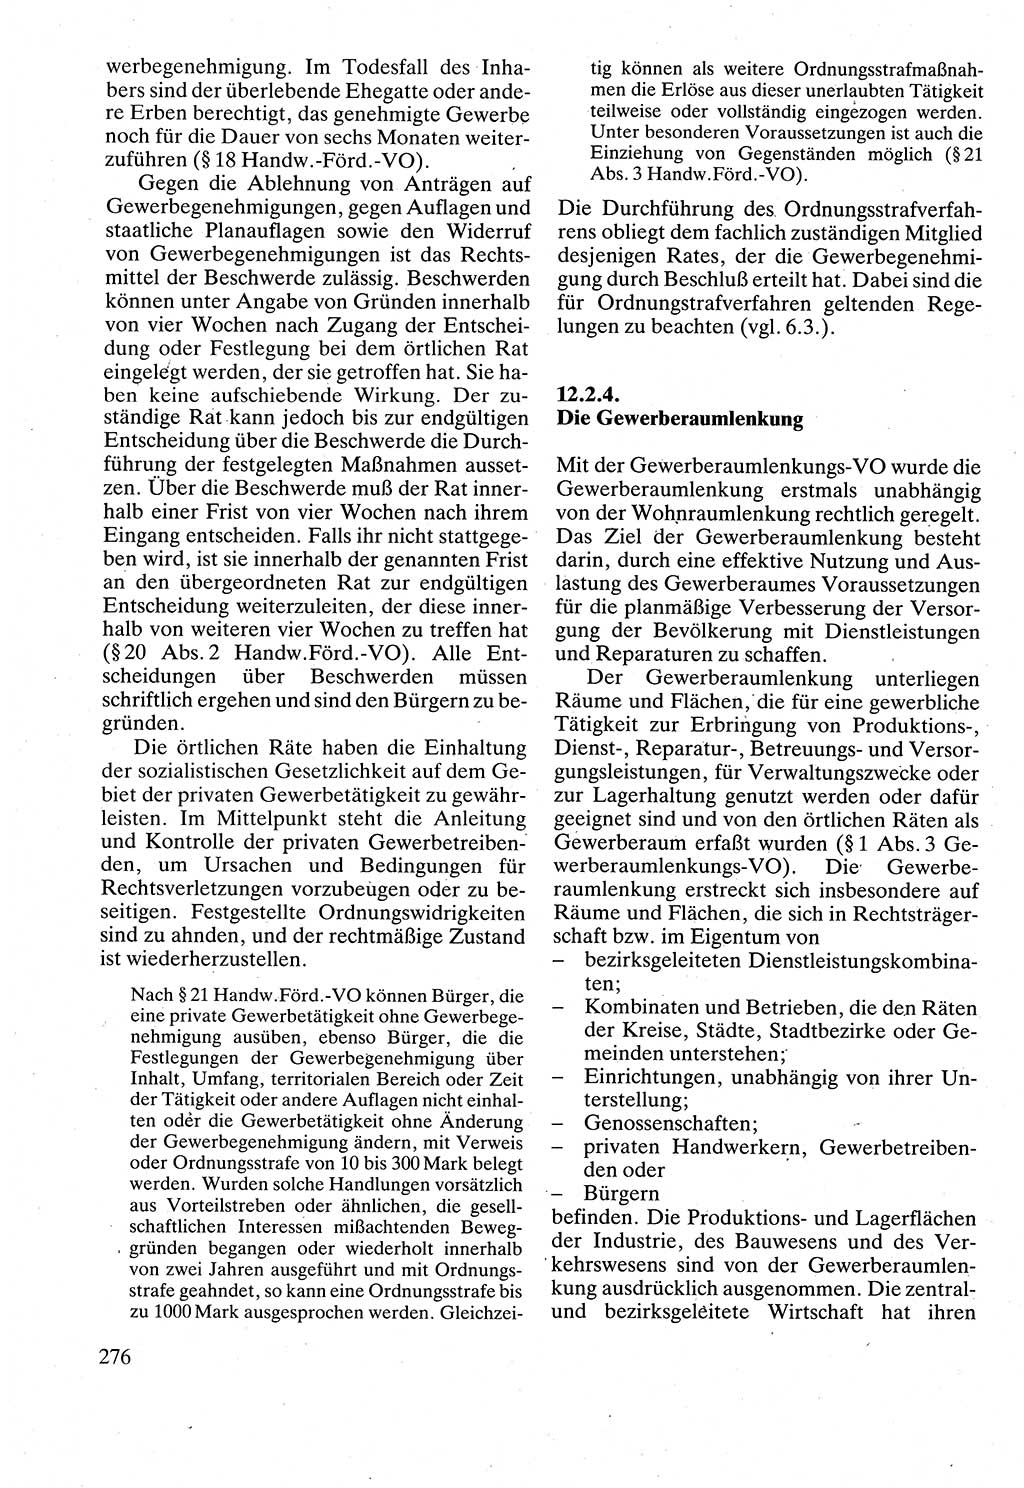 Verwaltungsrecht [Deutsche Demokratische Republik (DDR)], Lehrbuch 1988, Seite 276 (Verw.-R. DDR Lb. 1988, S. 276)